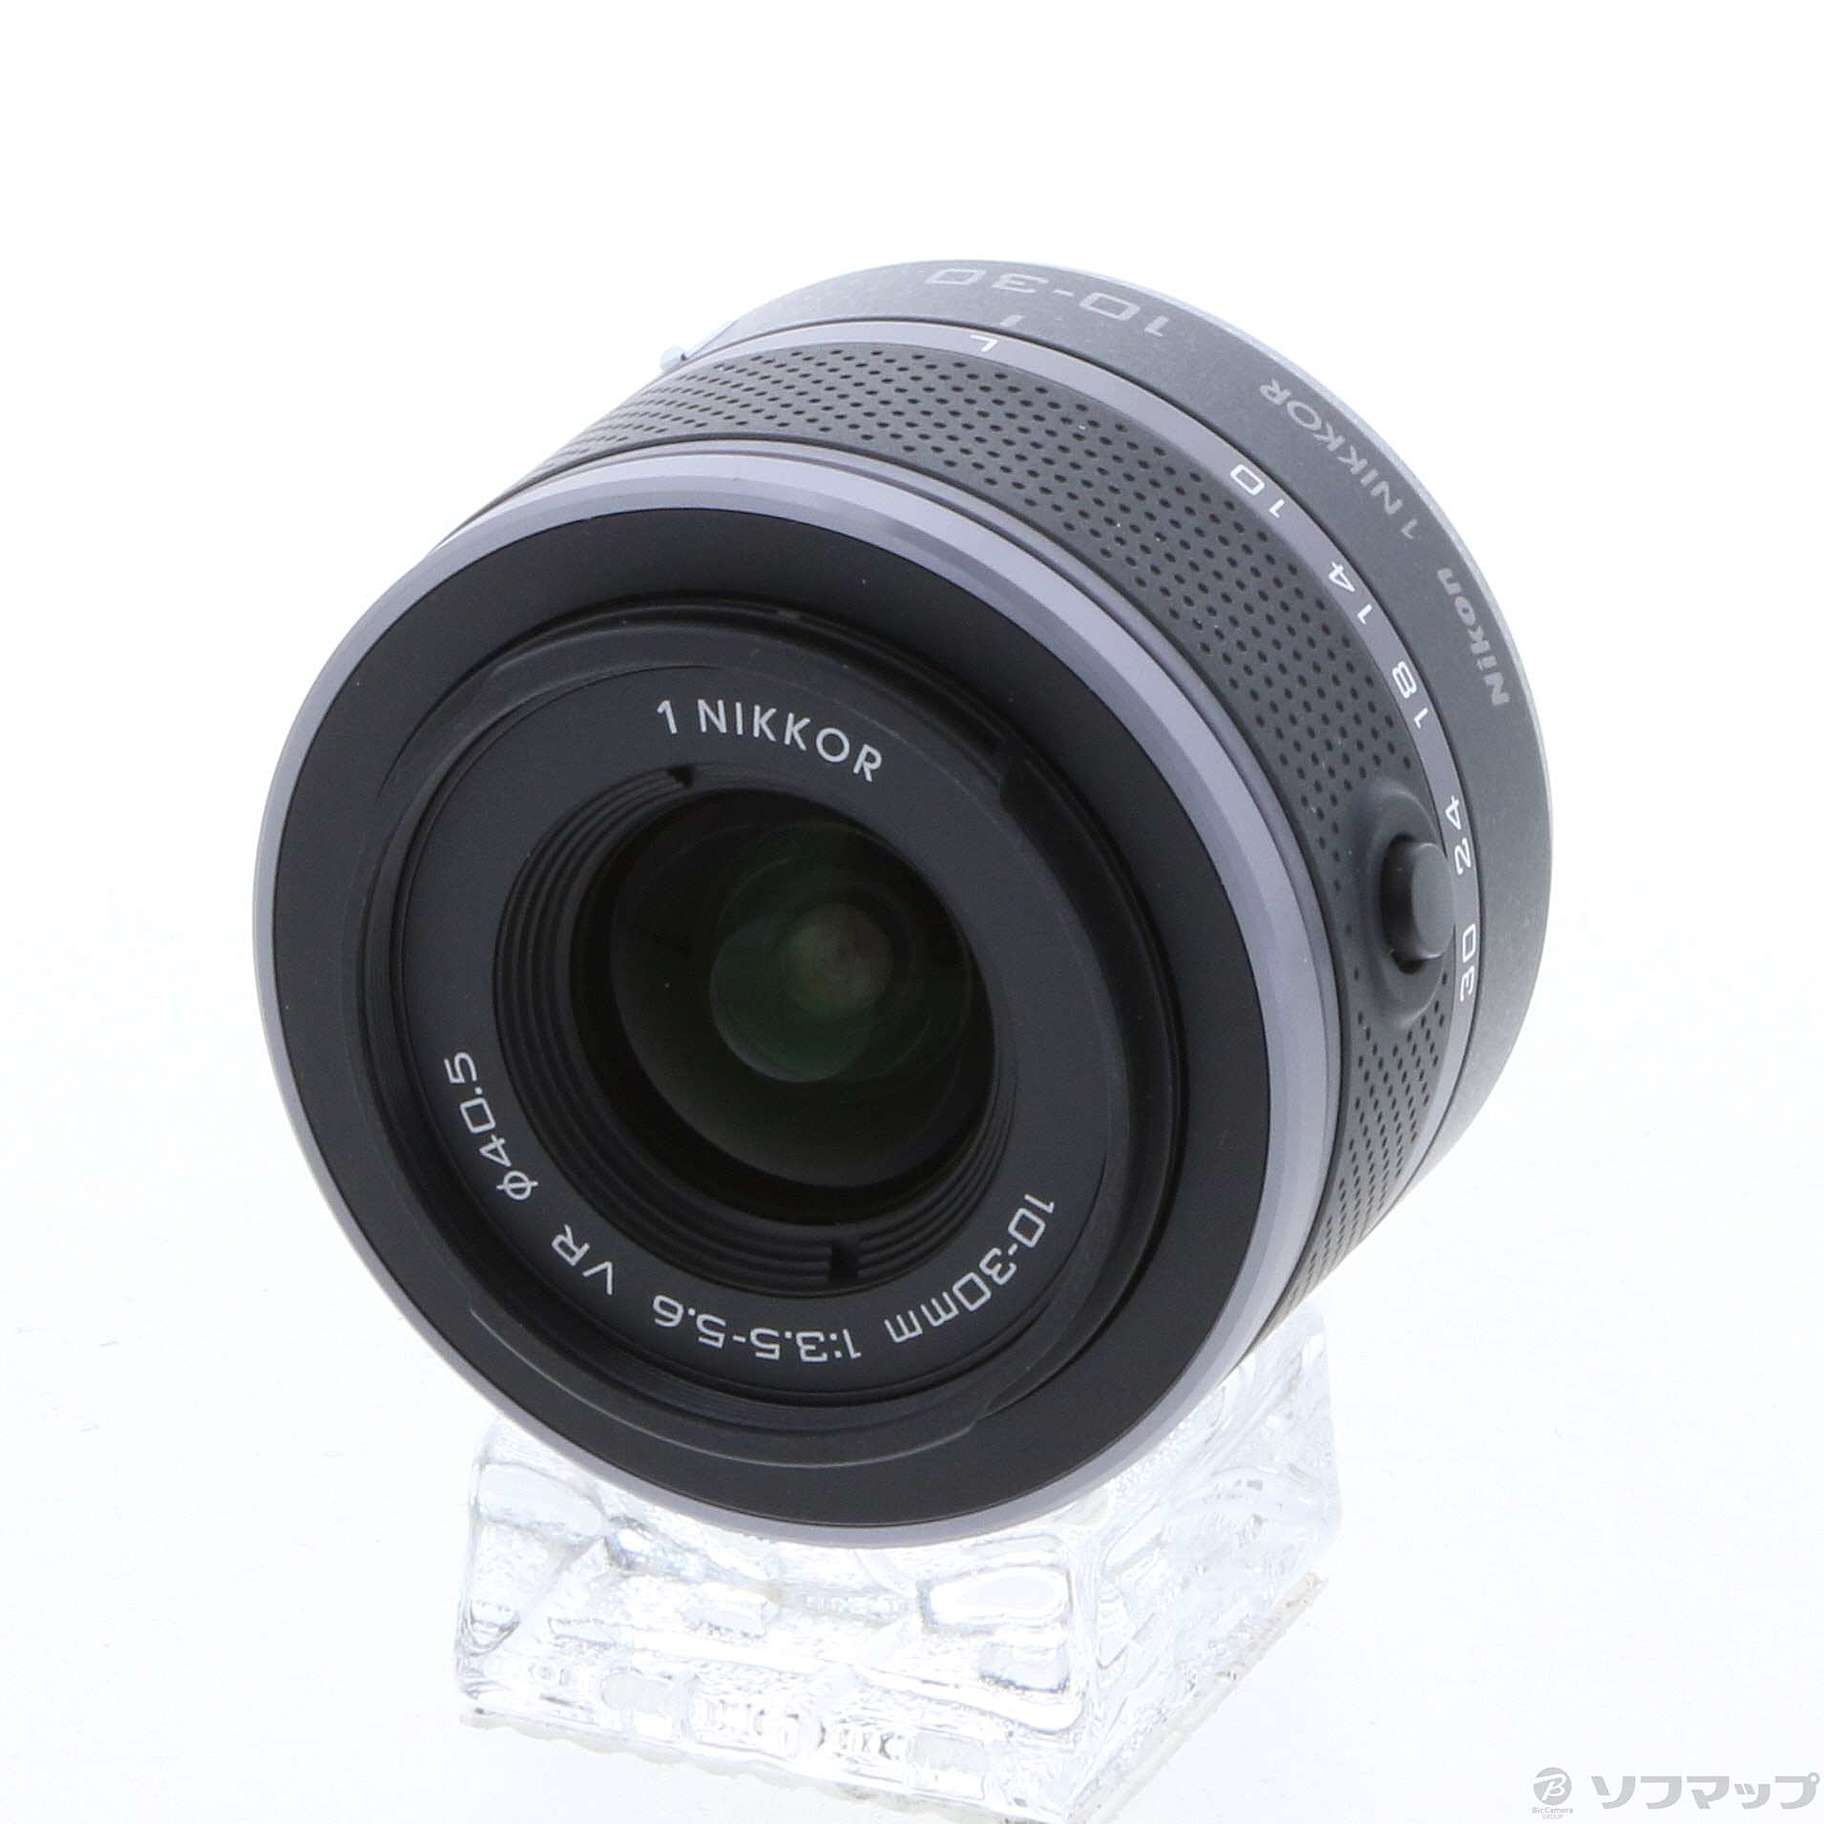 Nikon 1 NIKKOR 10-30mm F3.5-5.6 VR